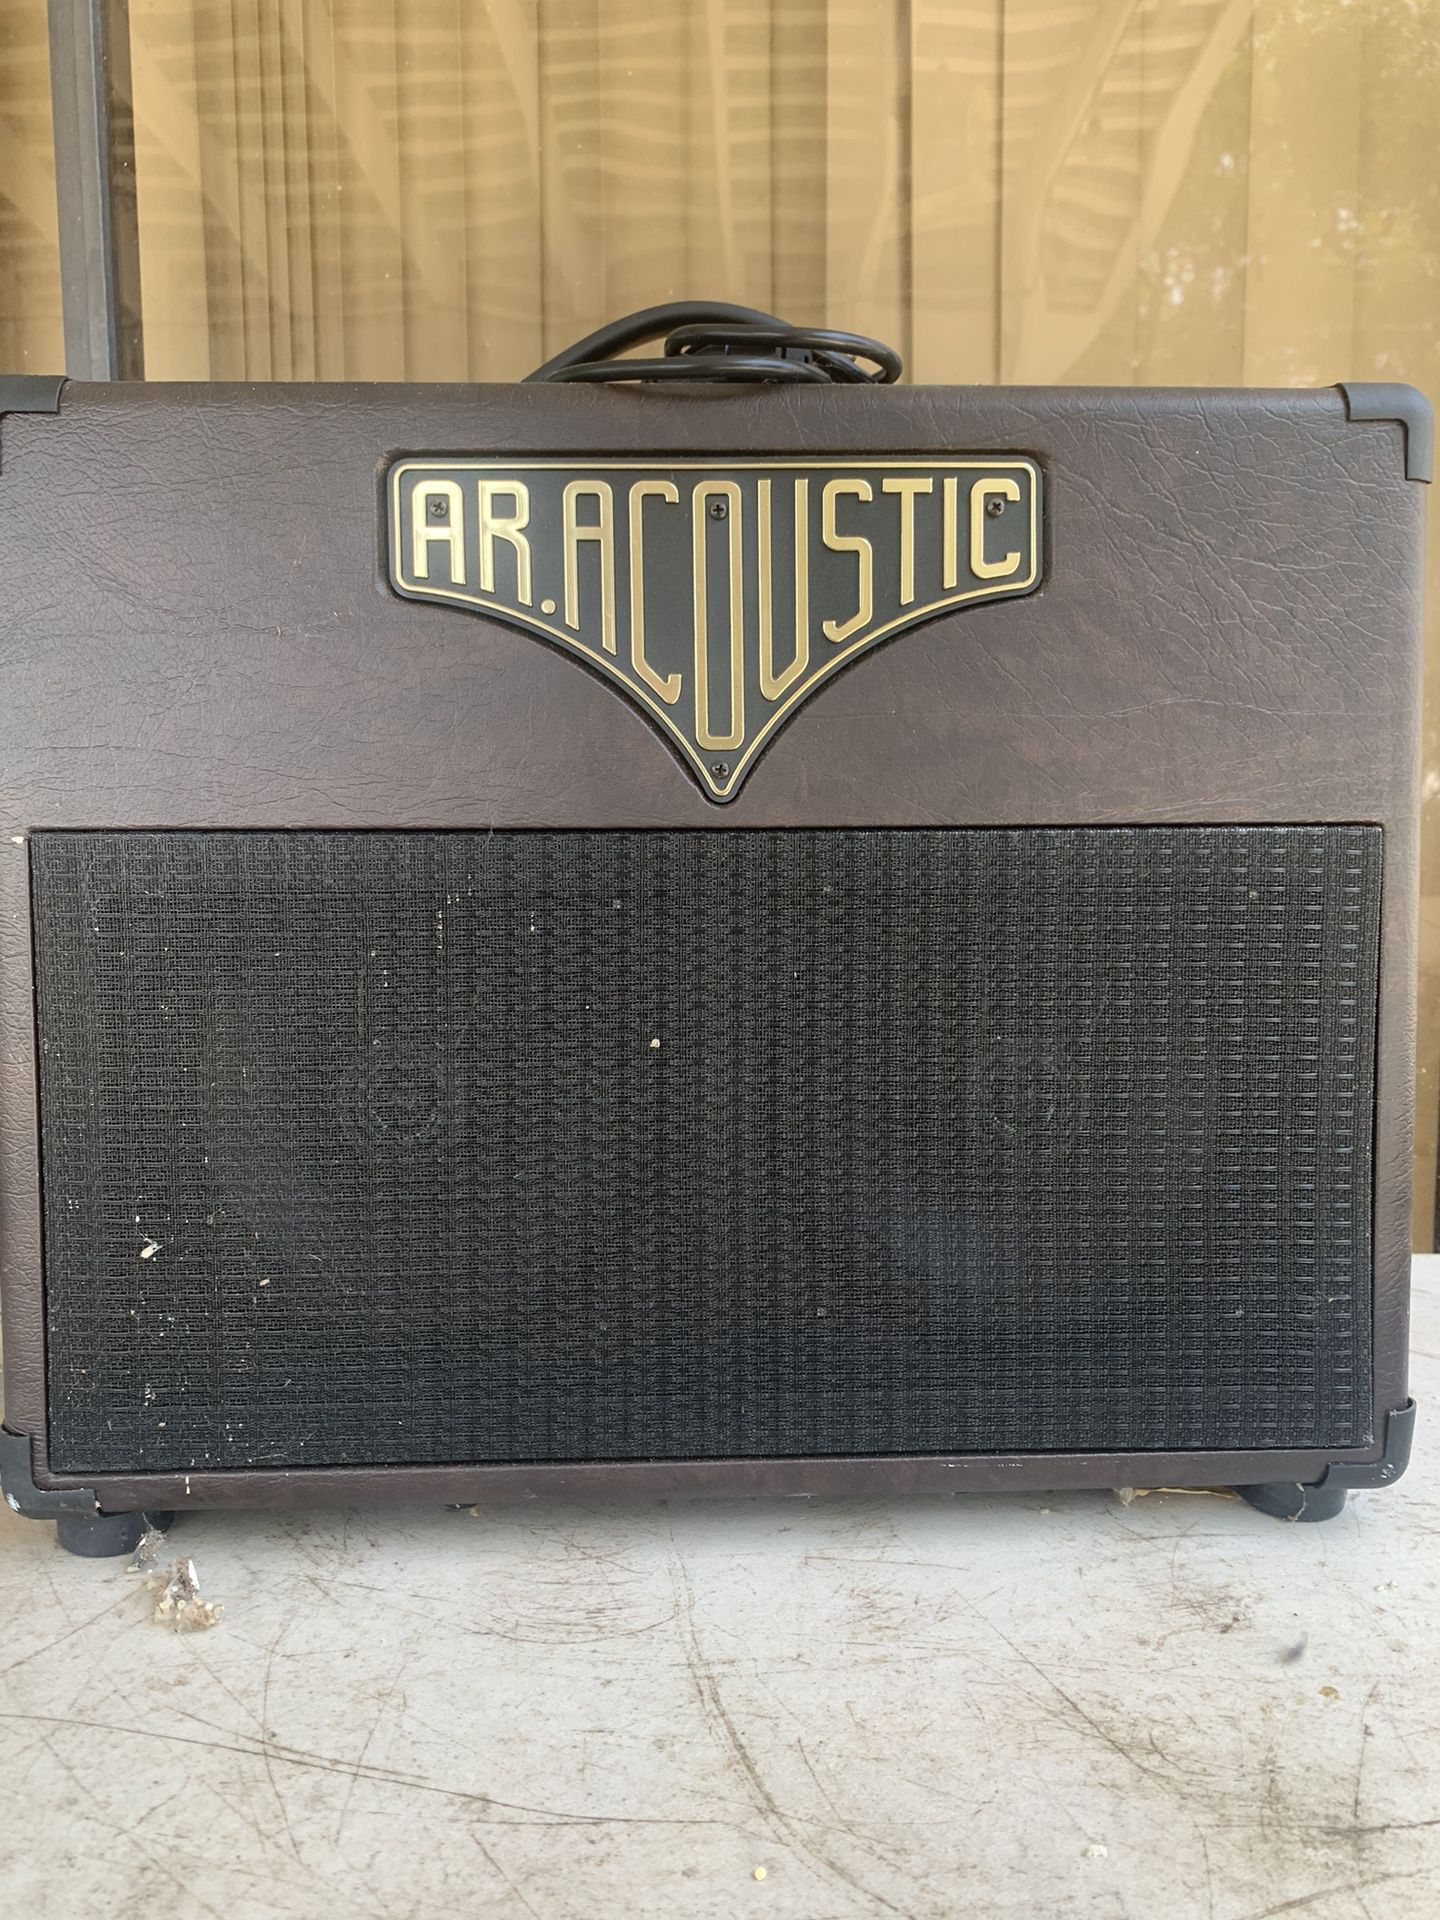 Amplifier Ar-acoustic 